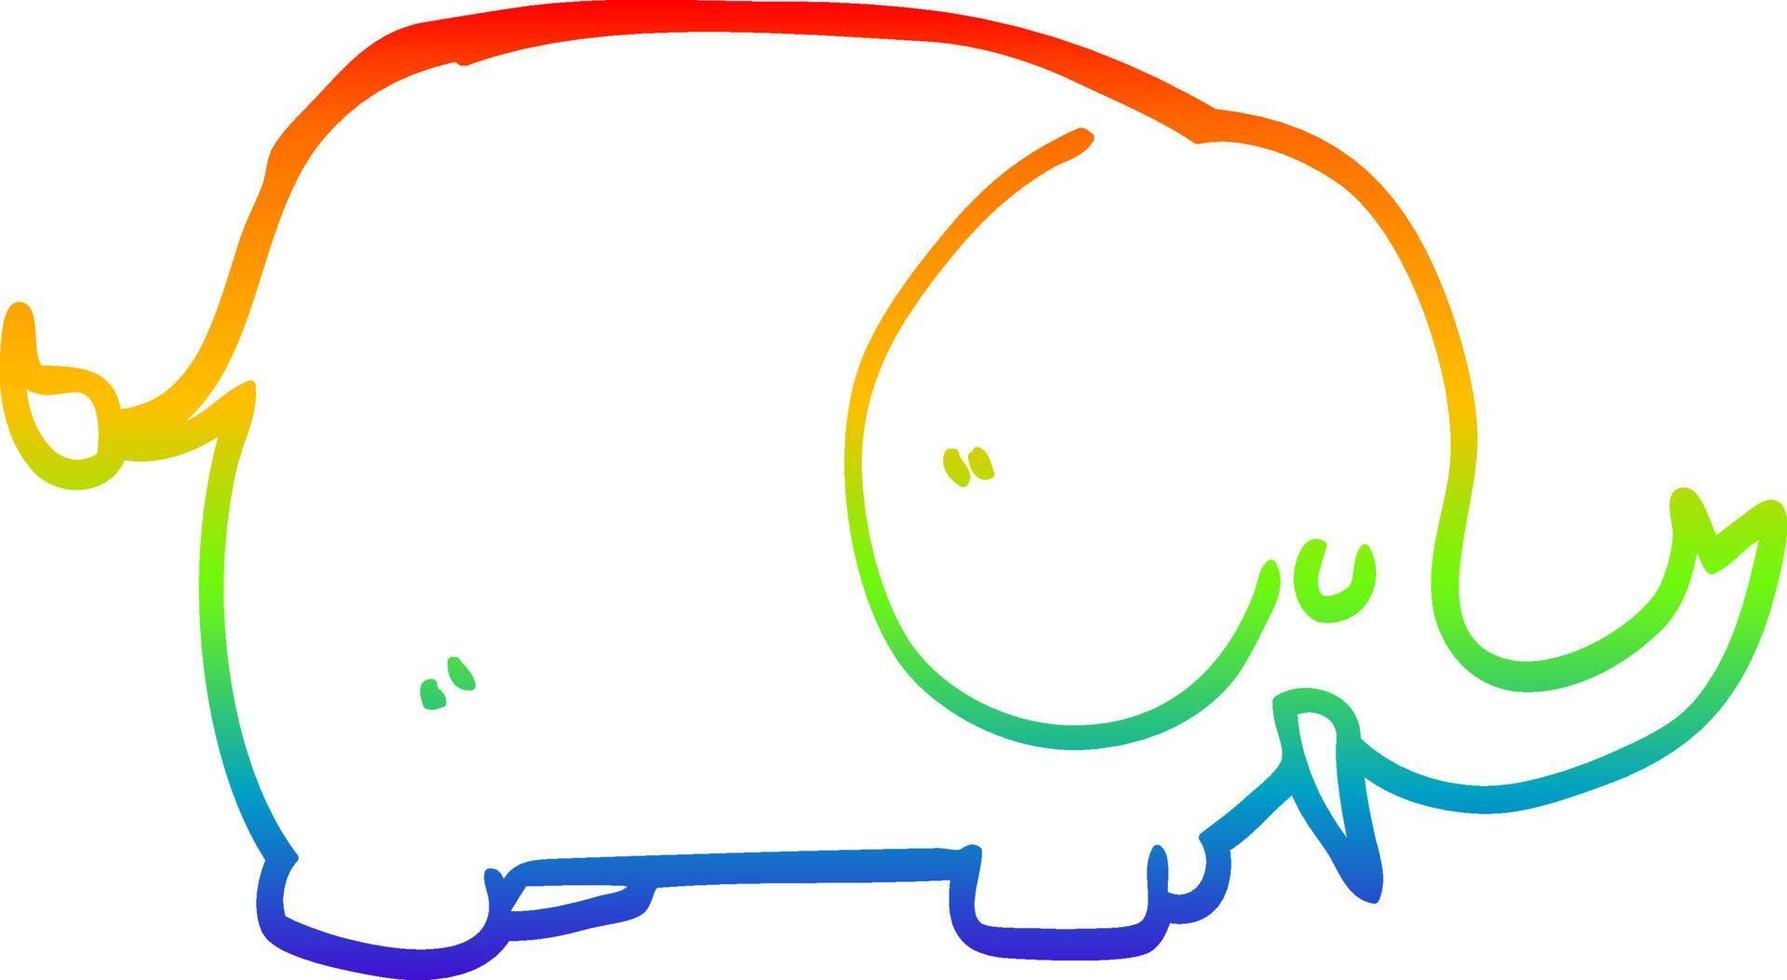 regenbooggradiënt lijntekening cartoon olifant vector